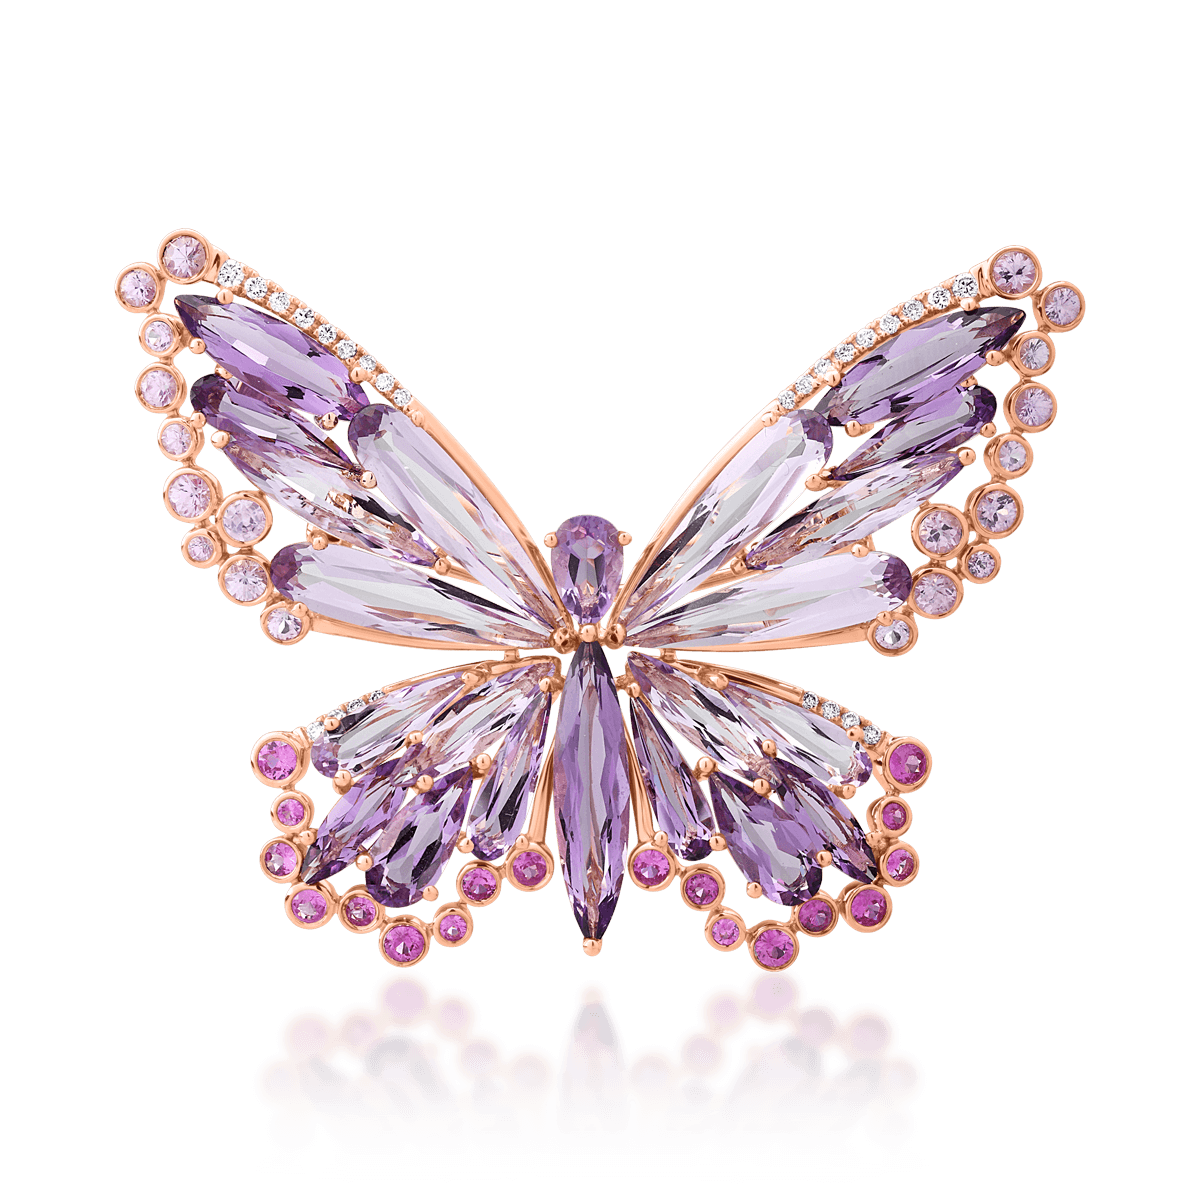 Brosa fluture din aur roz de 18K cu pietre pretioase si semipretioase de 15.85ct